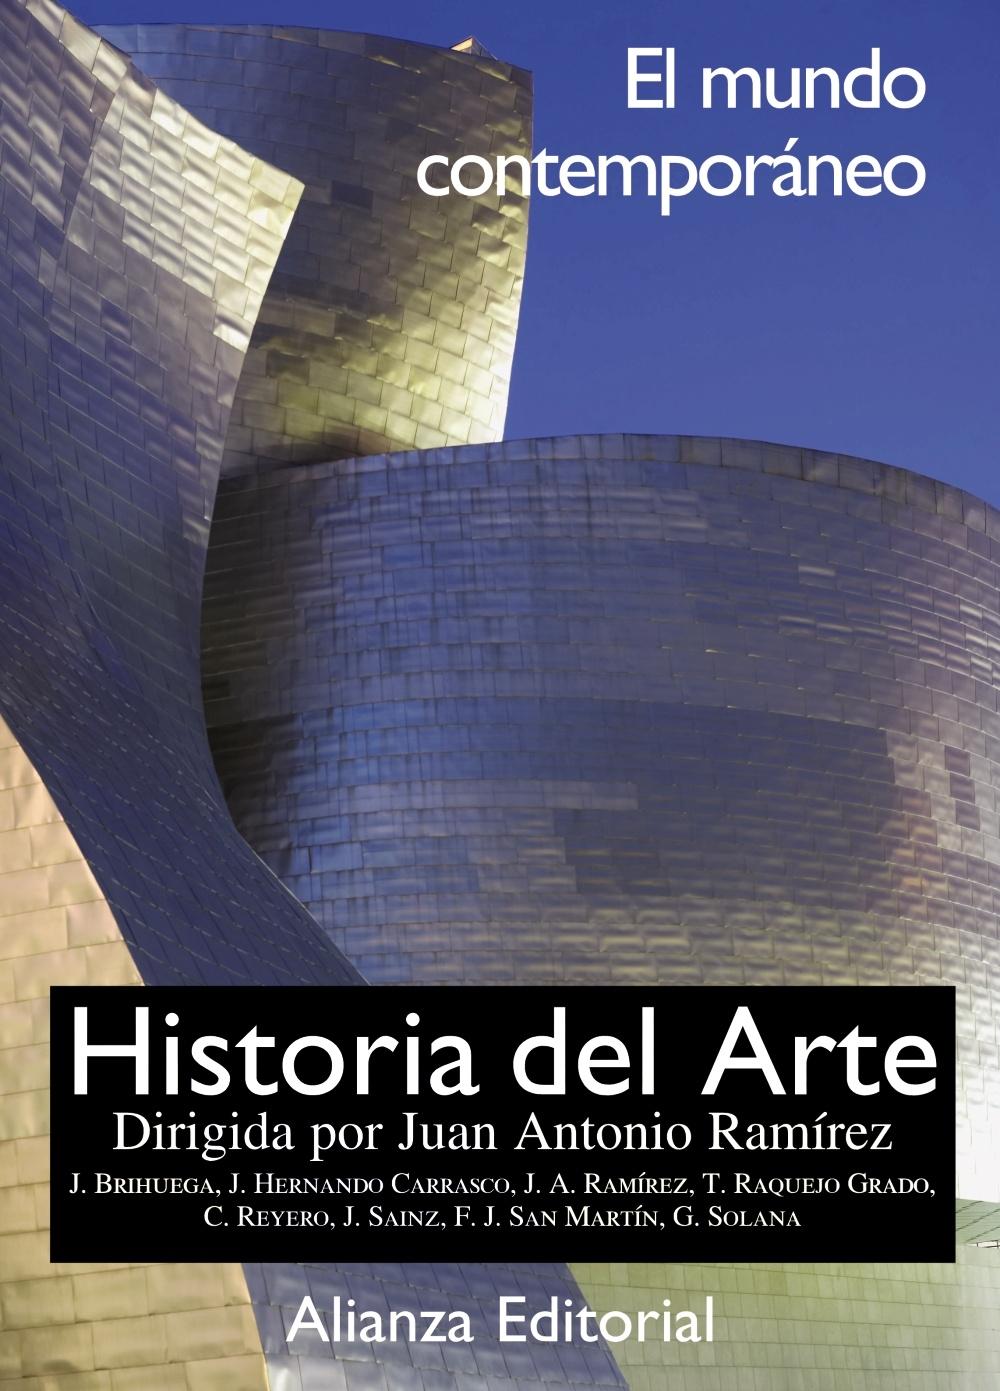 HISTORIA DEL ARTE  tomo 4 "El mundo Contemporaneo ". 